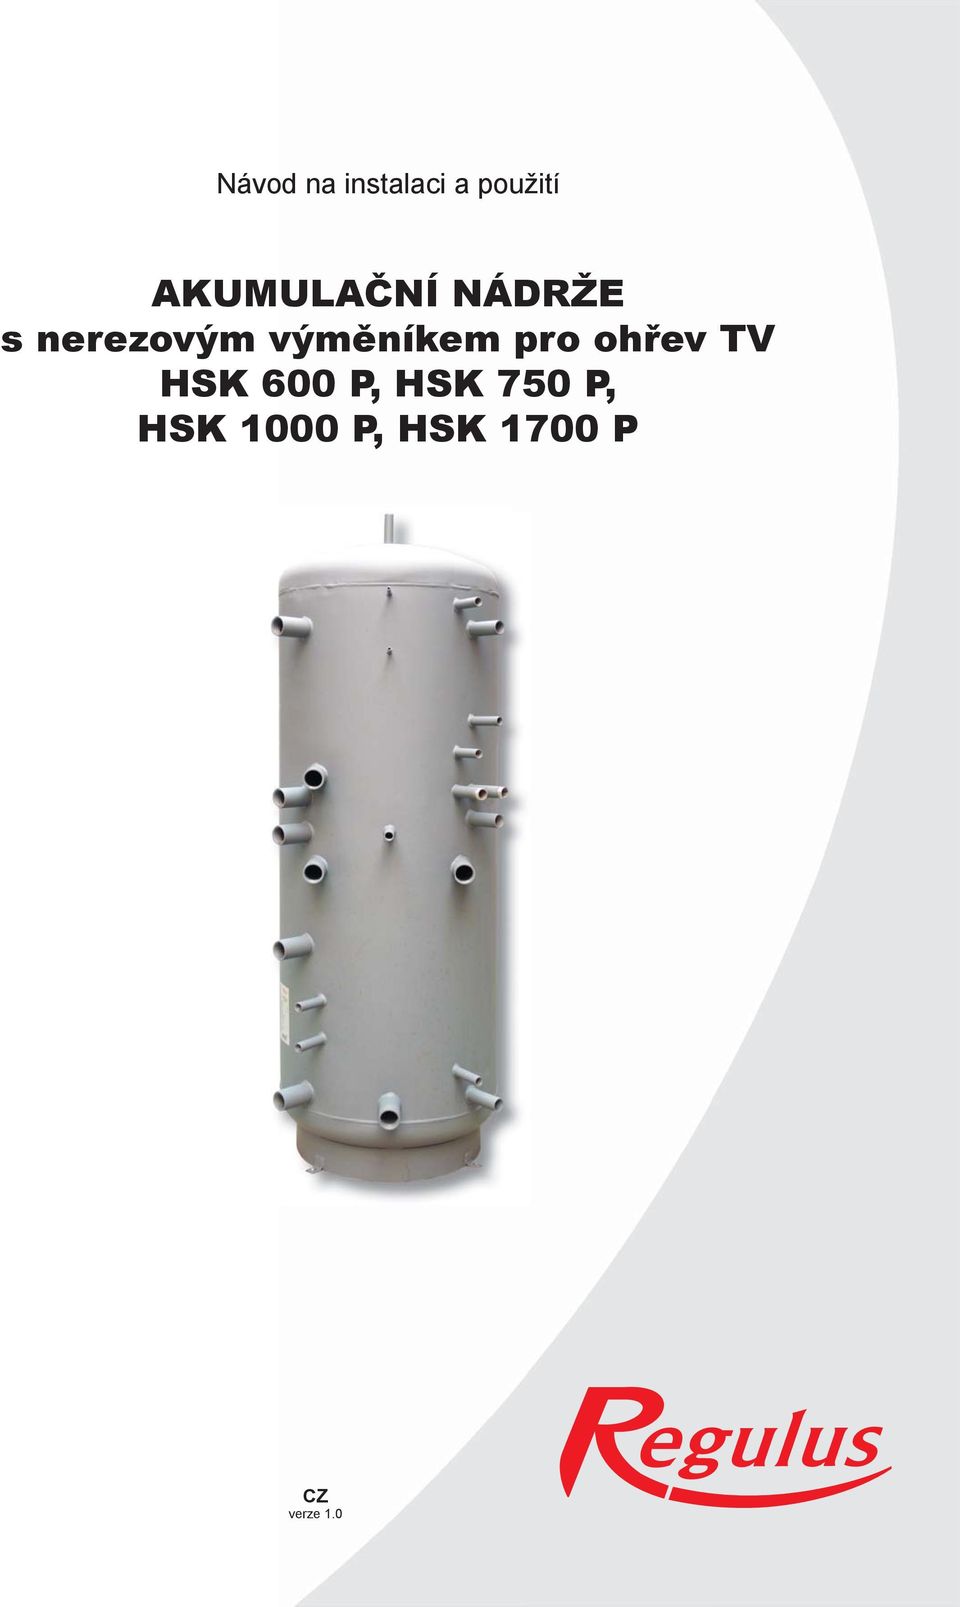 výměníkem pro ohřev TV HSK 600 P,